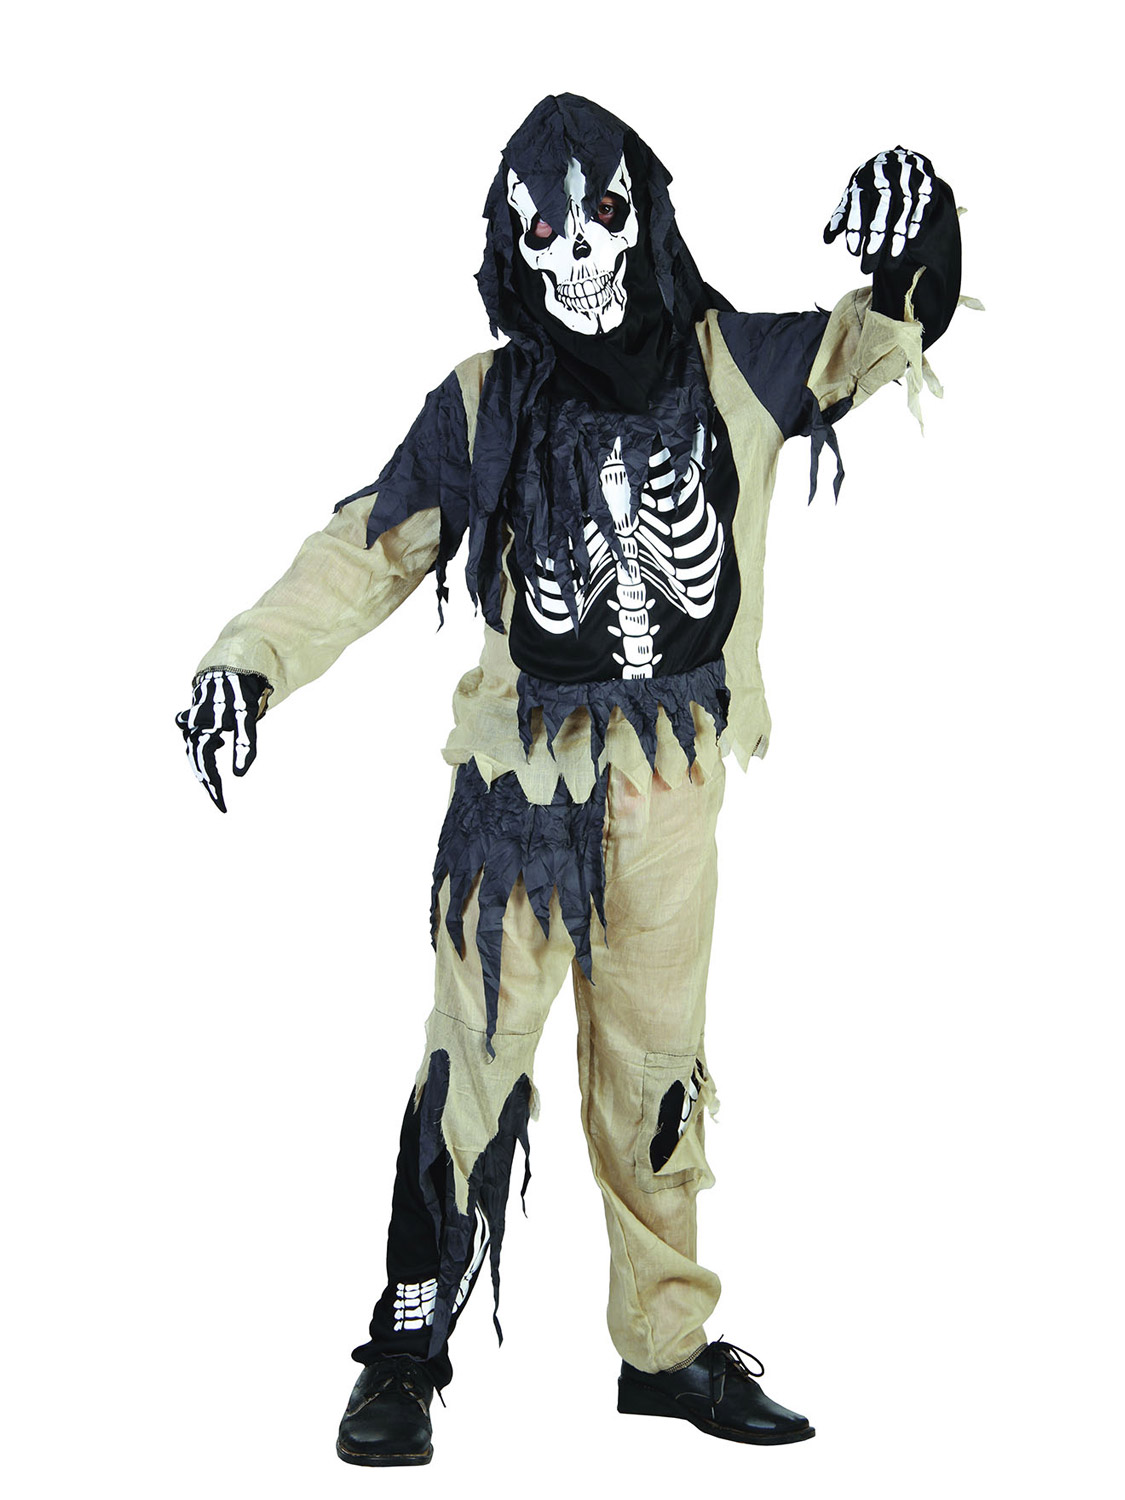 Boys ROTTEN SKELETON ZOMBIE Scary Halloween Horror Fancy Dress Costume Age 3-13 